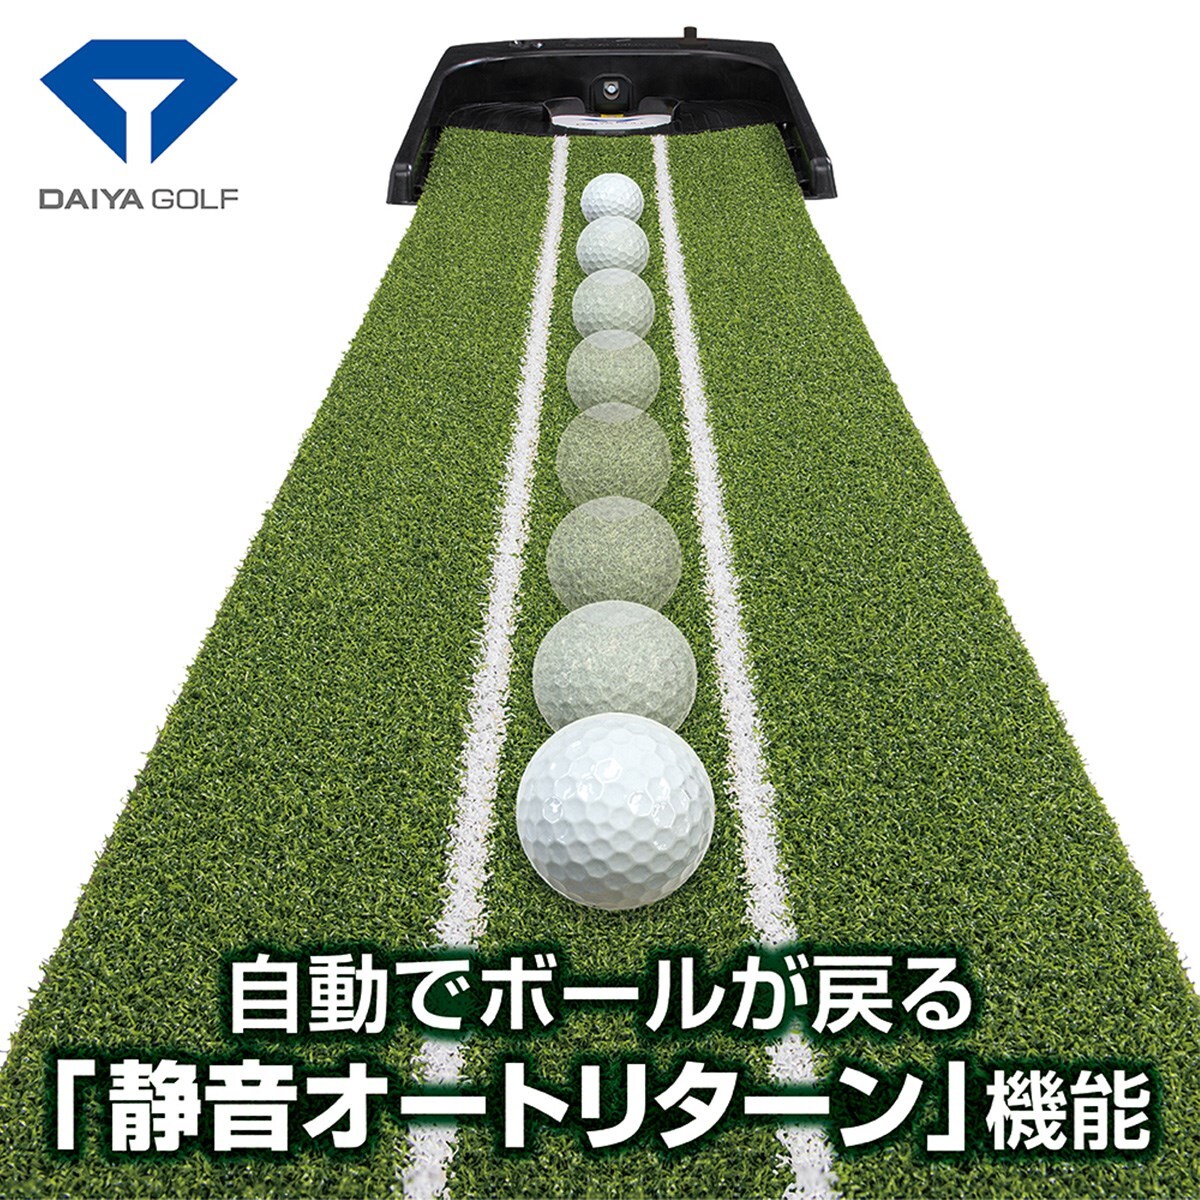 ダイヤオートパットHD(パター練習)|DAIYA GOLF(ダイヤゴルフ)の通販 